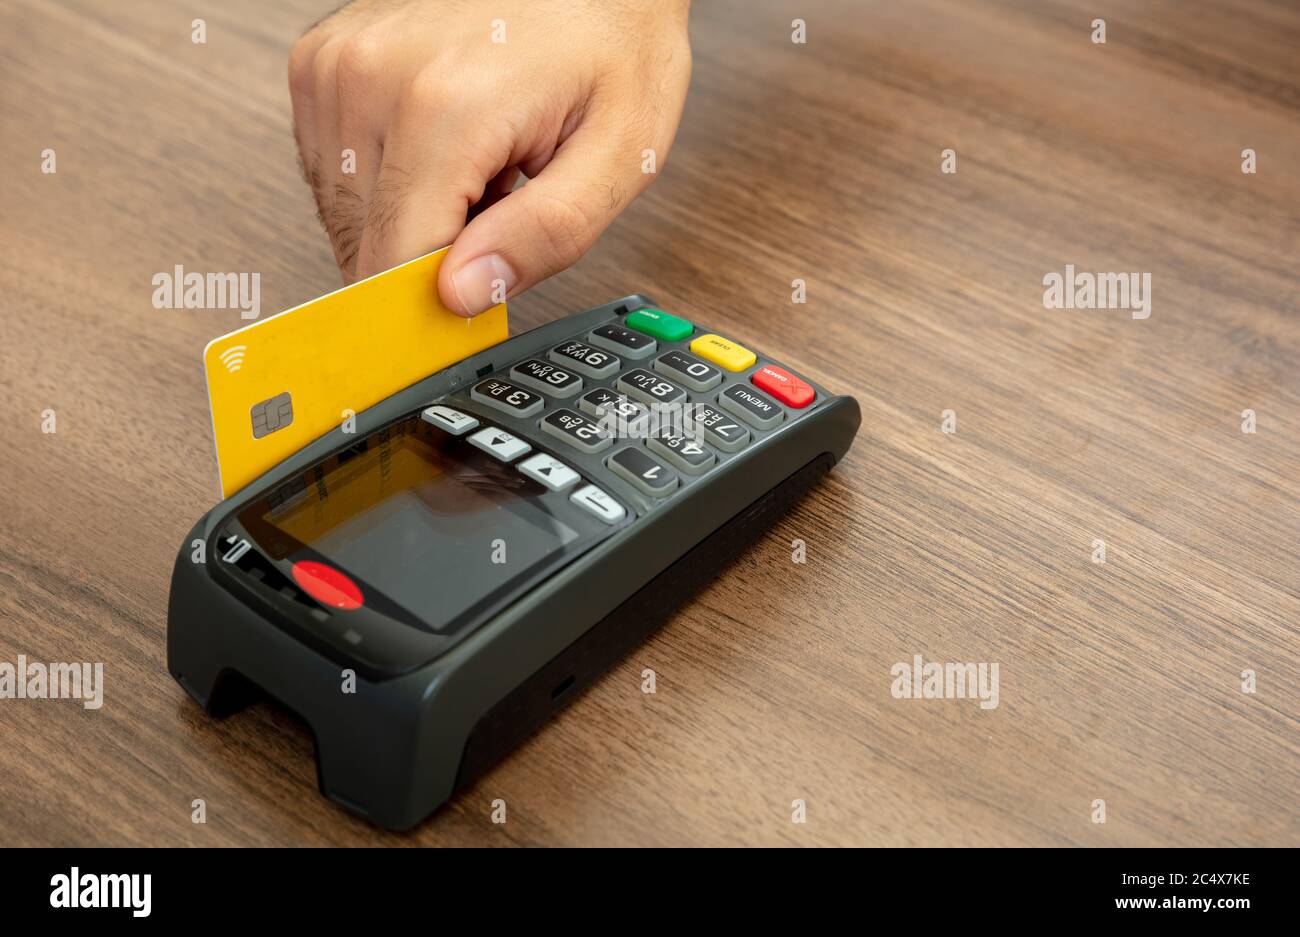 Hand wischen eine Kreditkarte in einem POS-Terminal auf Holz-Theke Hintergrund, Nahaufnahme.Terminal-Kasse Maschine für bargeldlose Zahlung. Stockfoto